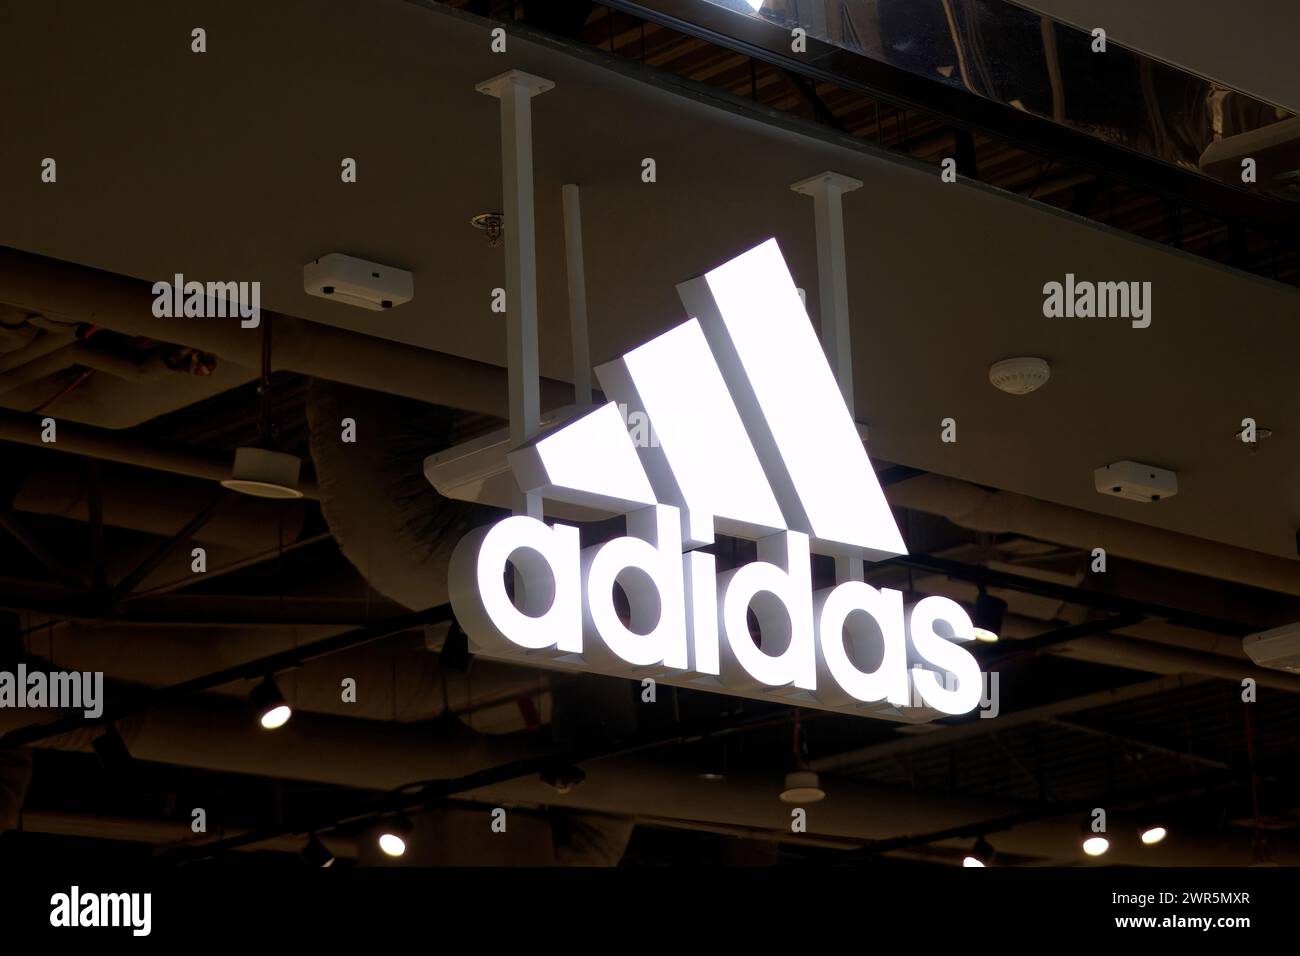 Adidas-Schild, Logo vor dem Adidas-Shop. Adidas ist ein weltweit tätiger Händler für Sportbekleidung und Laufschuhe. Stockfoto